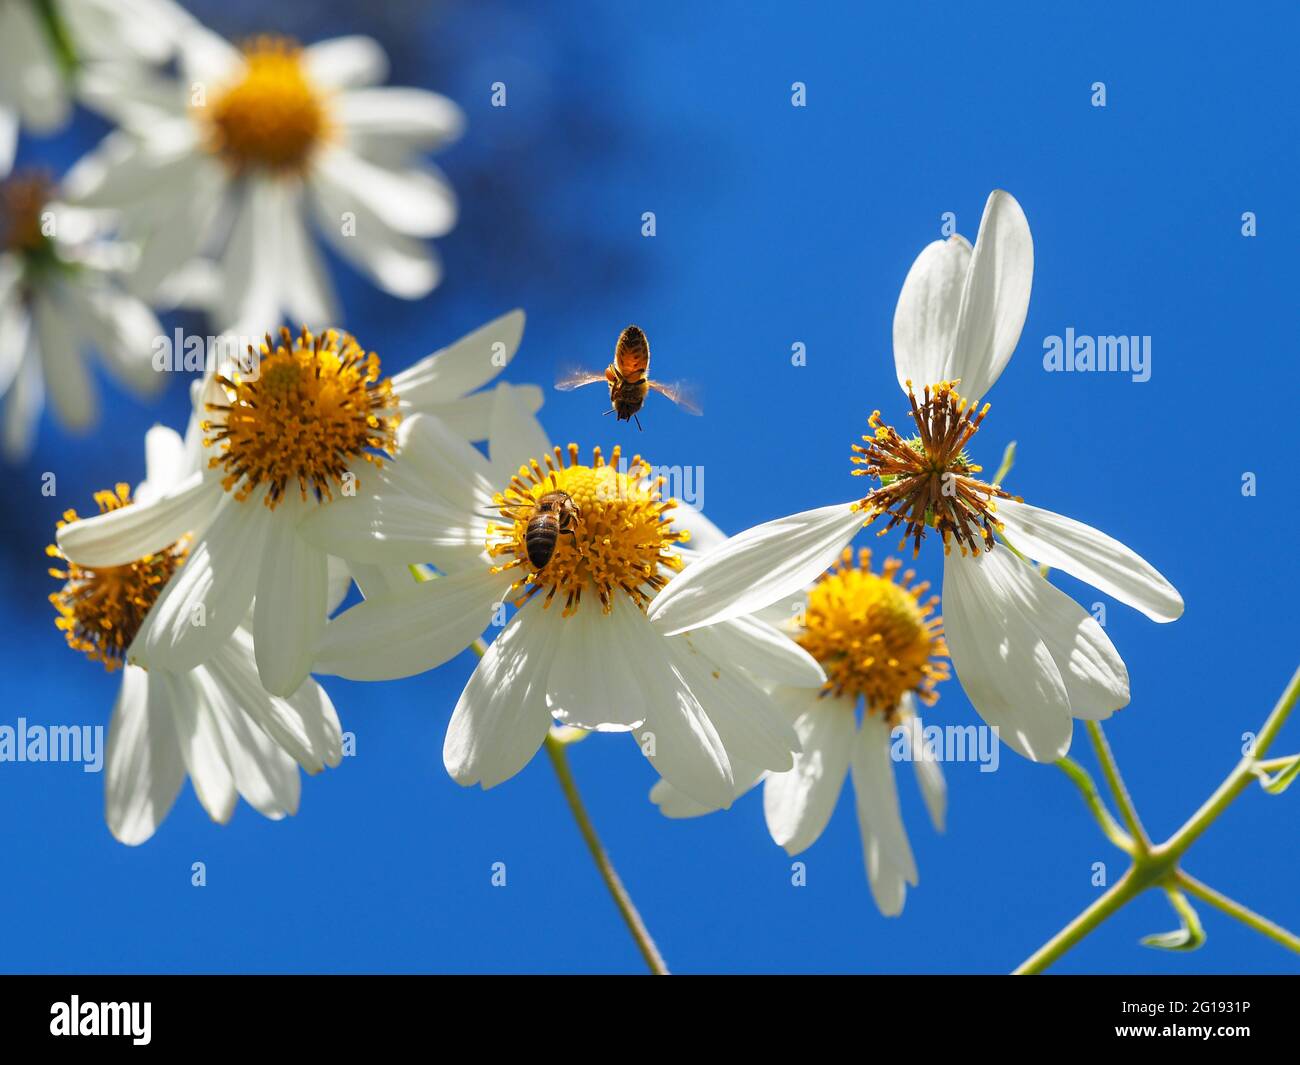 Natur, Bienen auf den Weißen Blumen des Baumes Daisy, die sich vor blauem Himmel erheben, Pollen für die Honigproduktion sammeln, eine fliegt kopfüber in der Luft Stockfoto